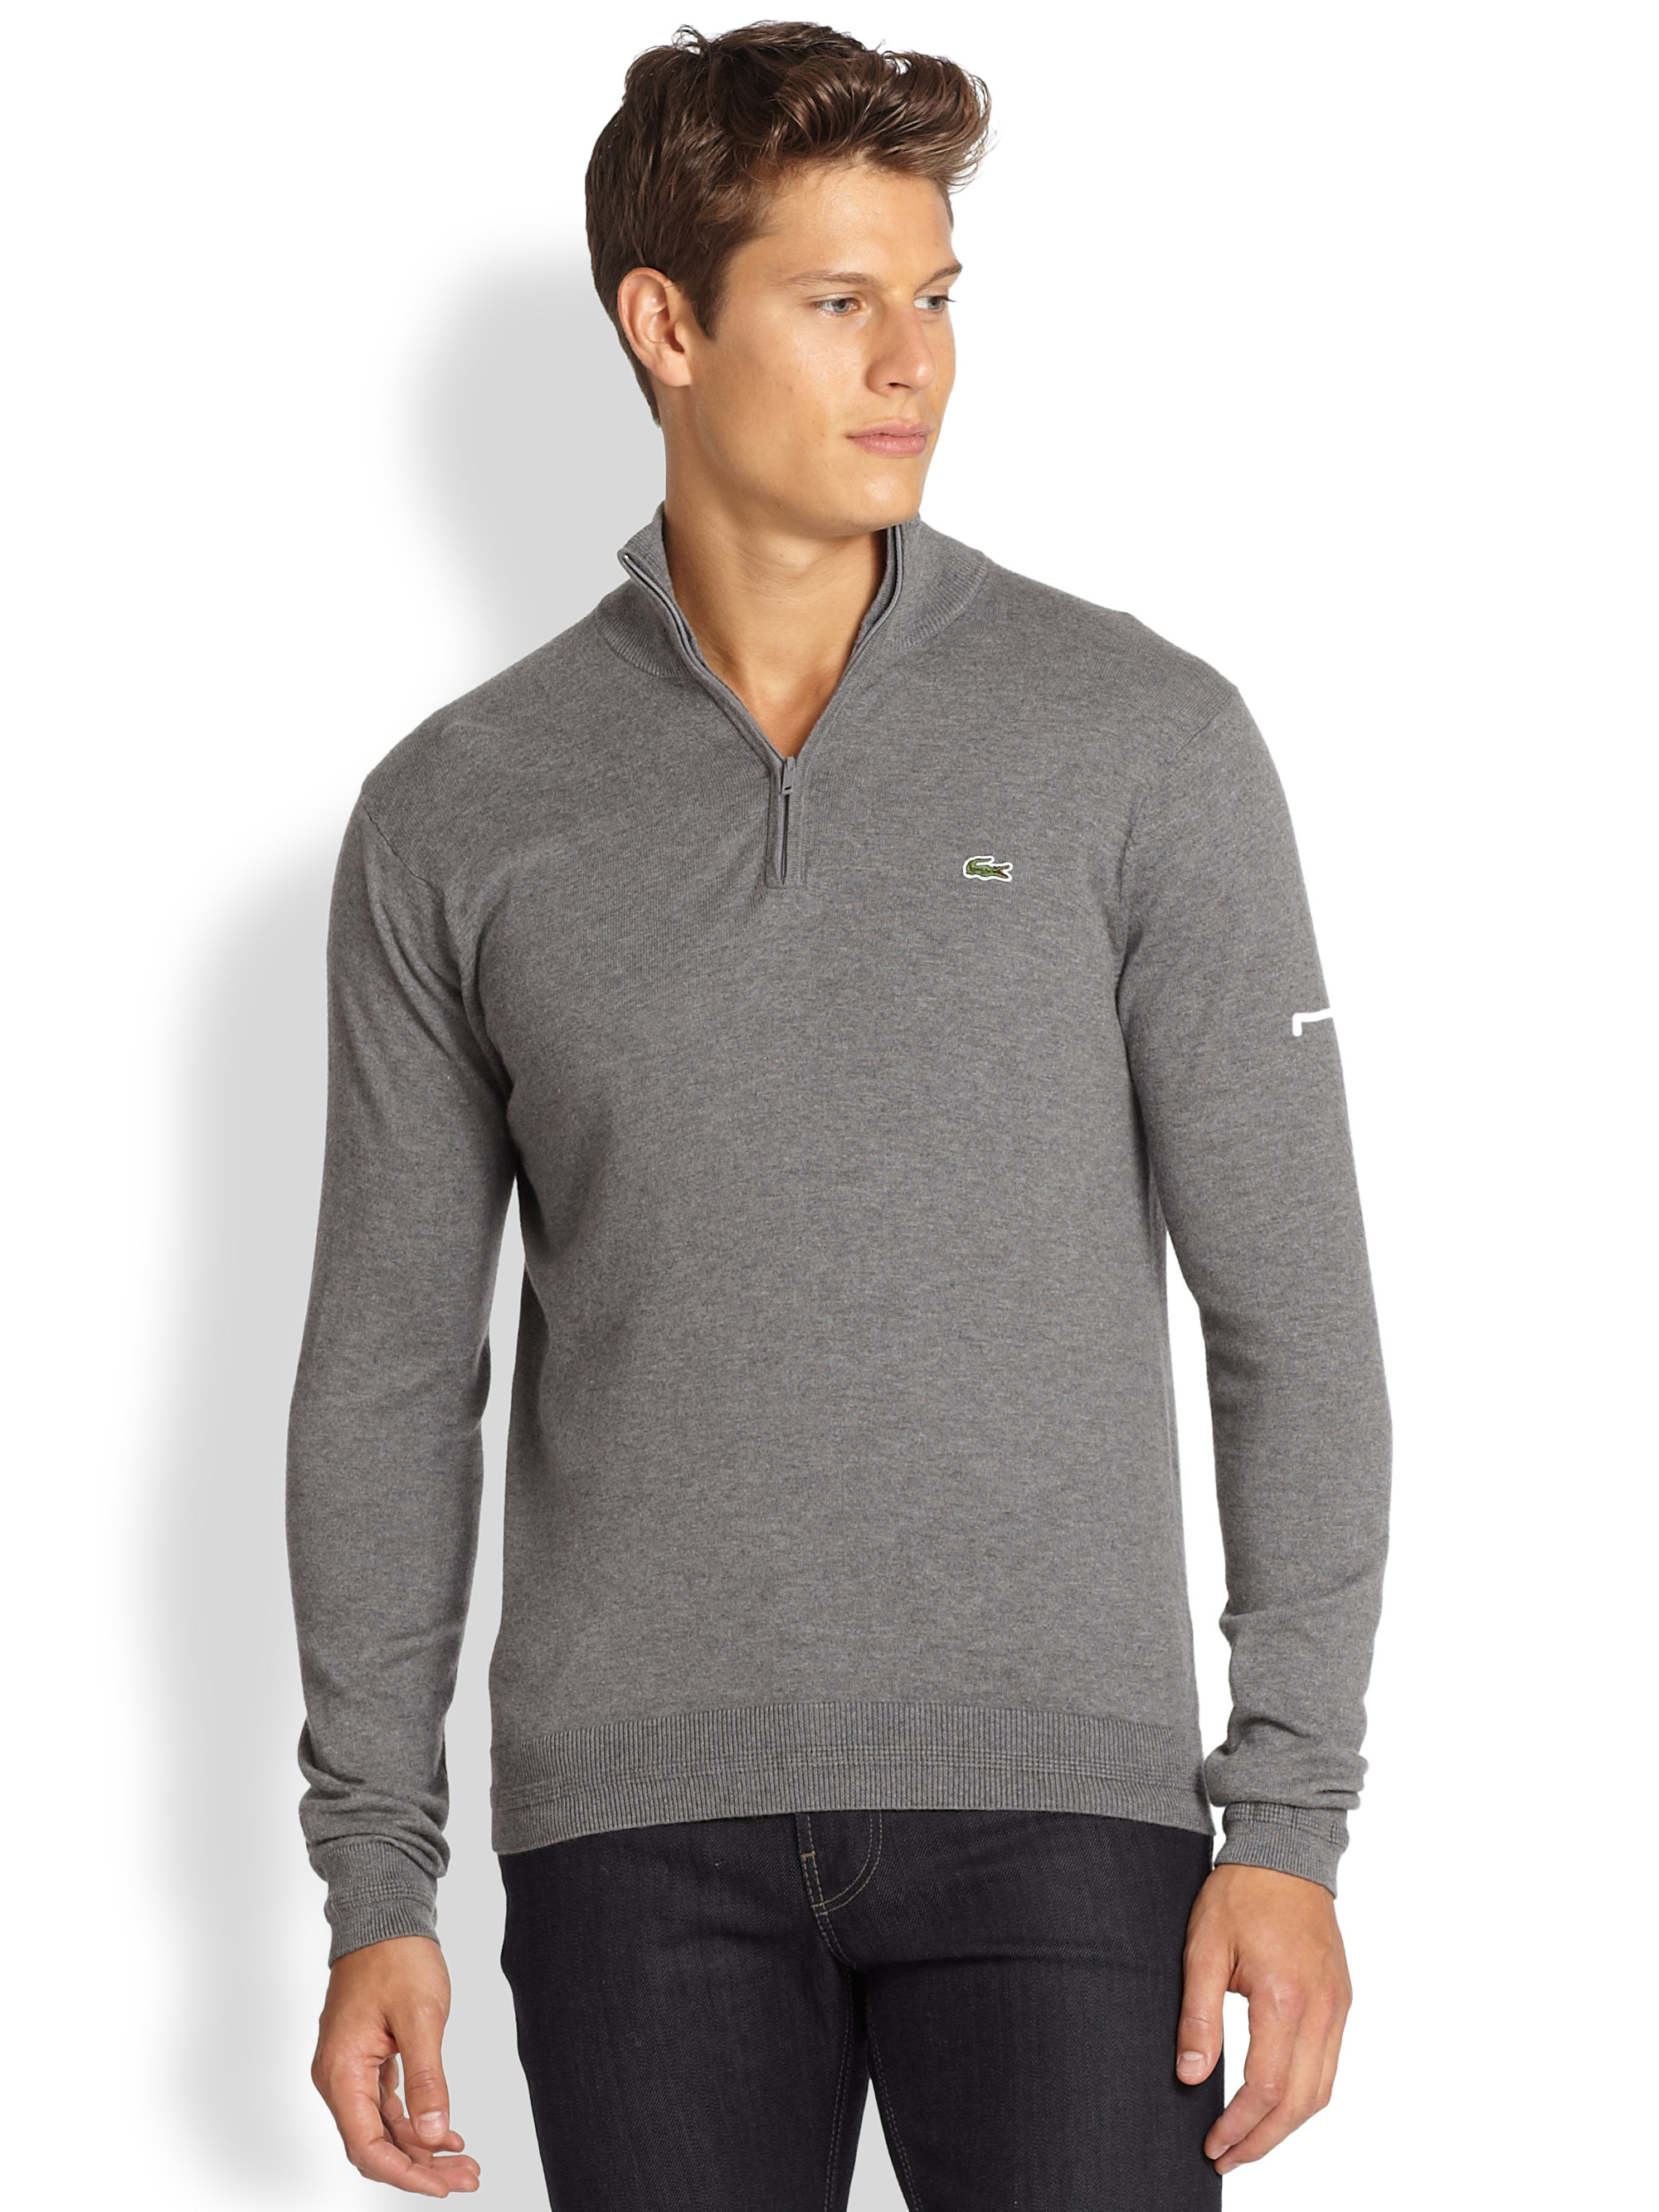 Lyst - Lacoste Half-zip Knit Sweater In Gray For Men 399